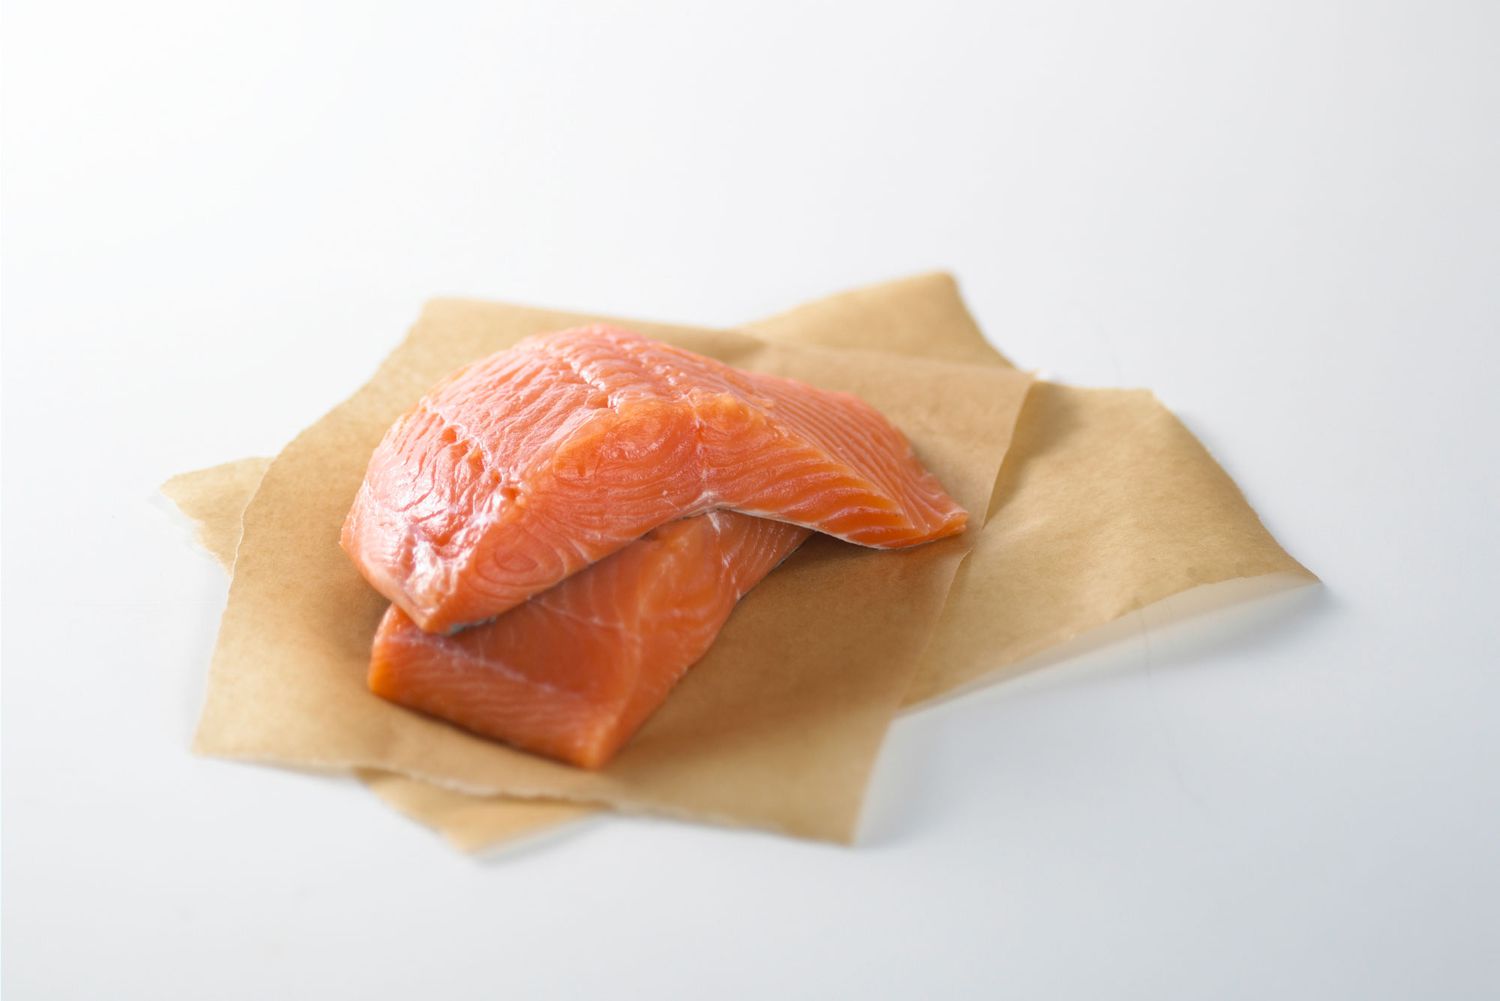 salmon fillets on parchment paper